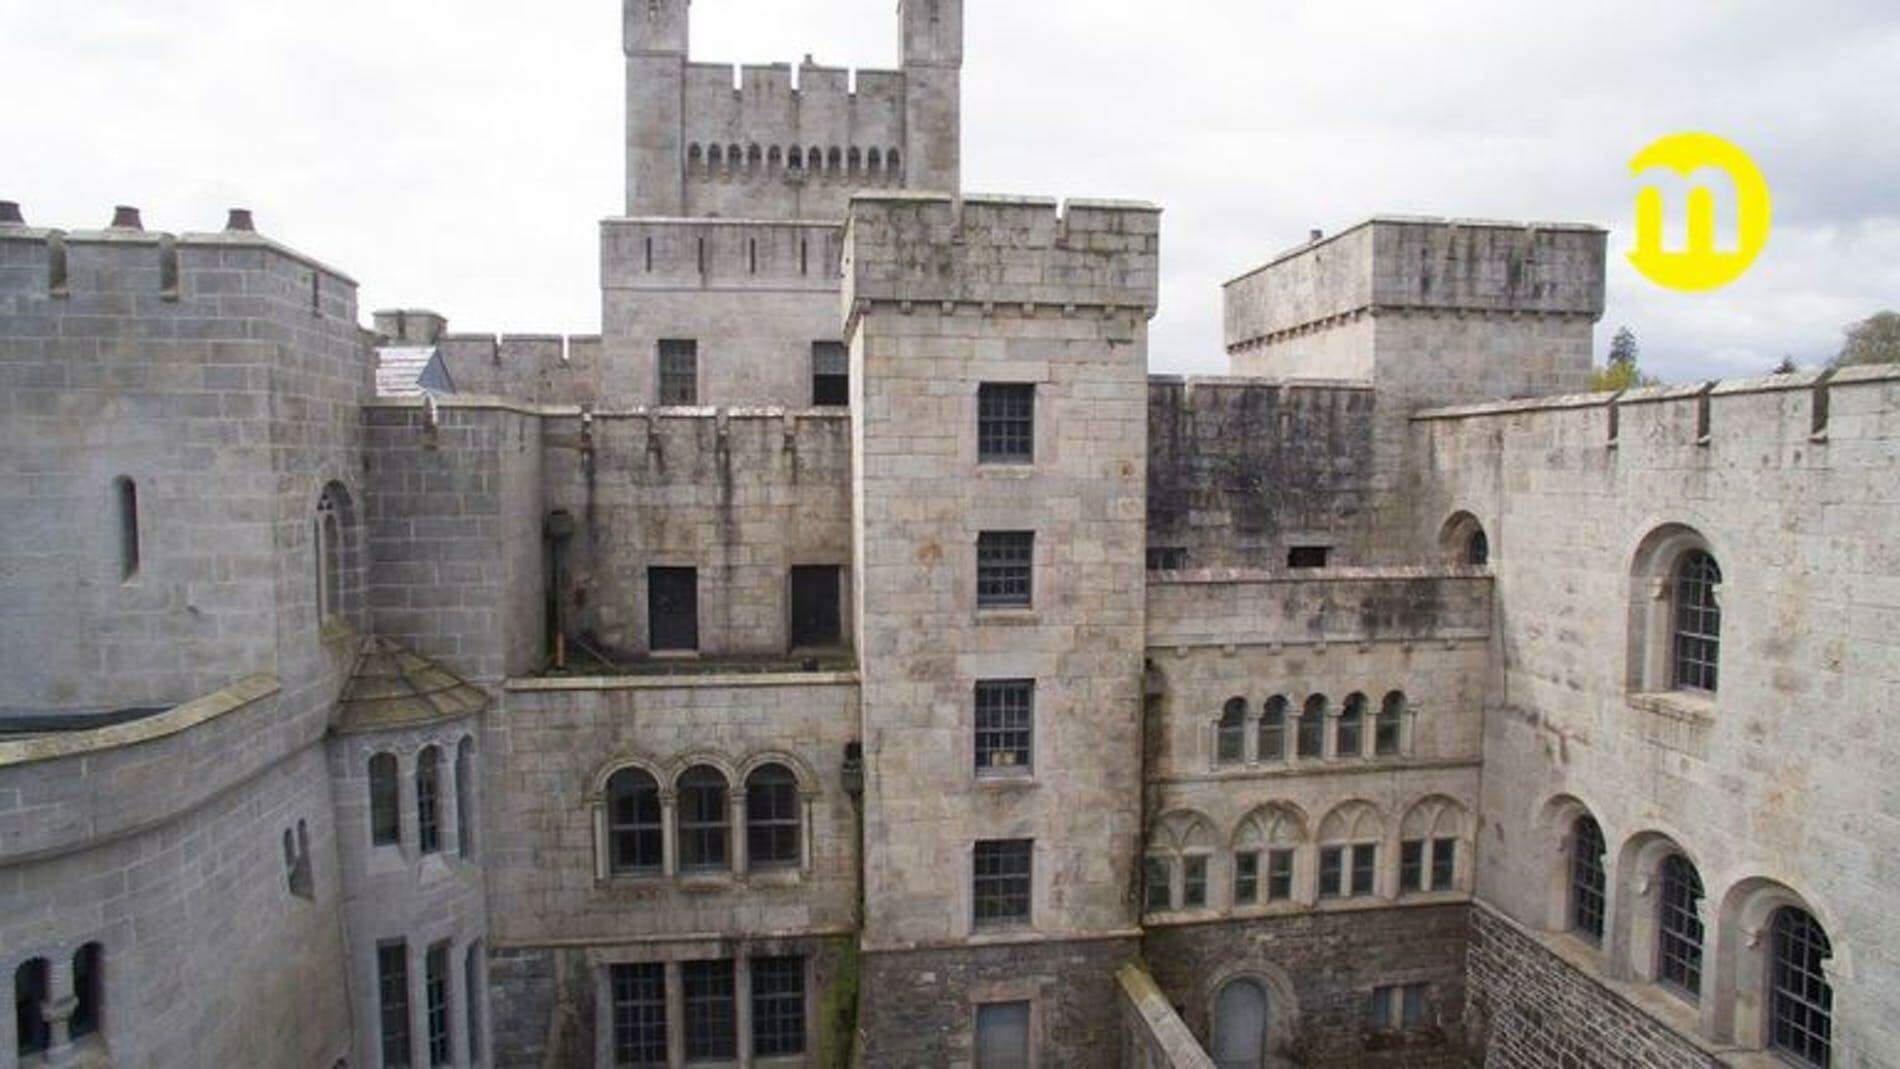 Castelo usado em "Game of Thrones" está à venda por R$ 2,5 milhões